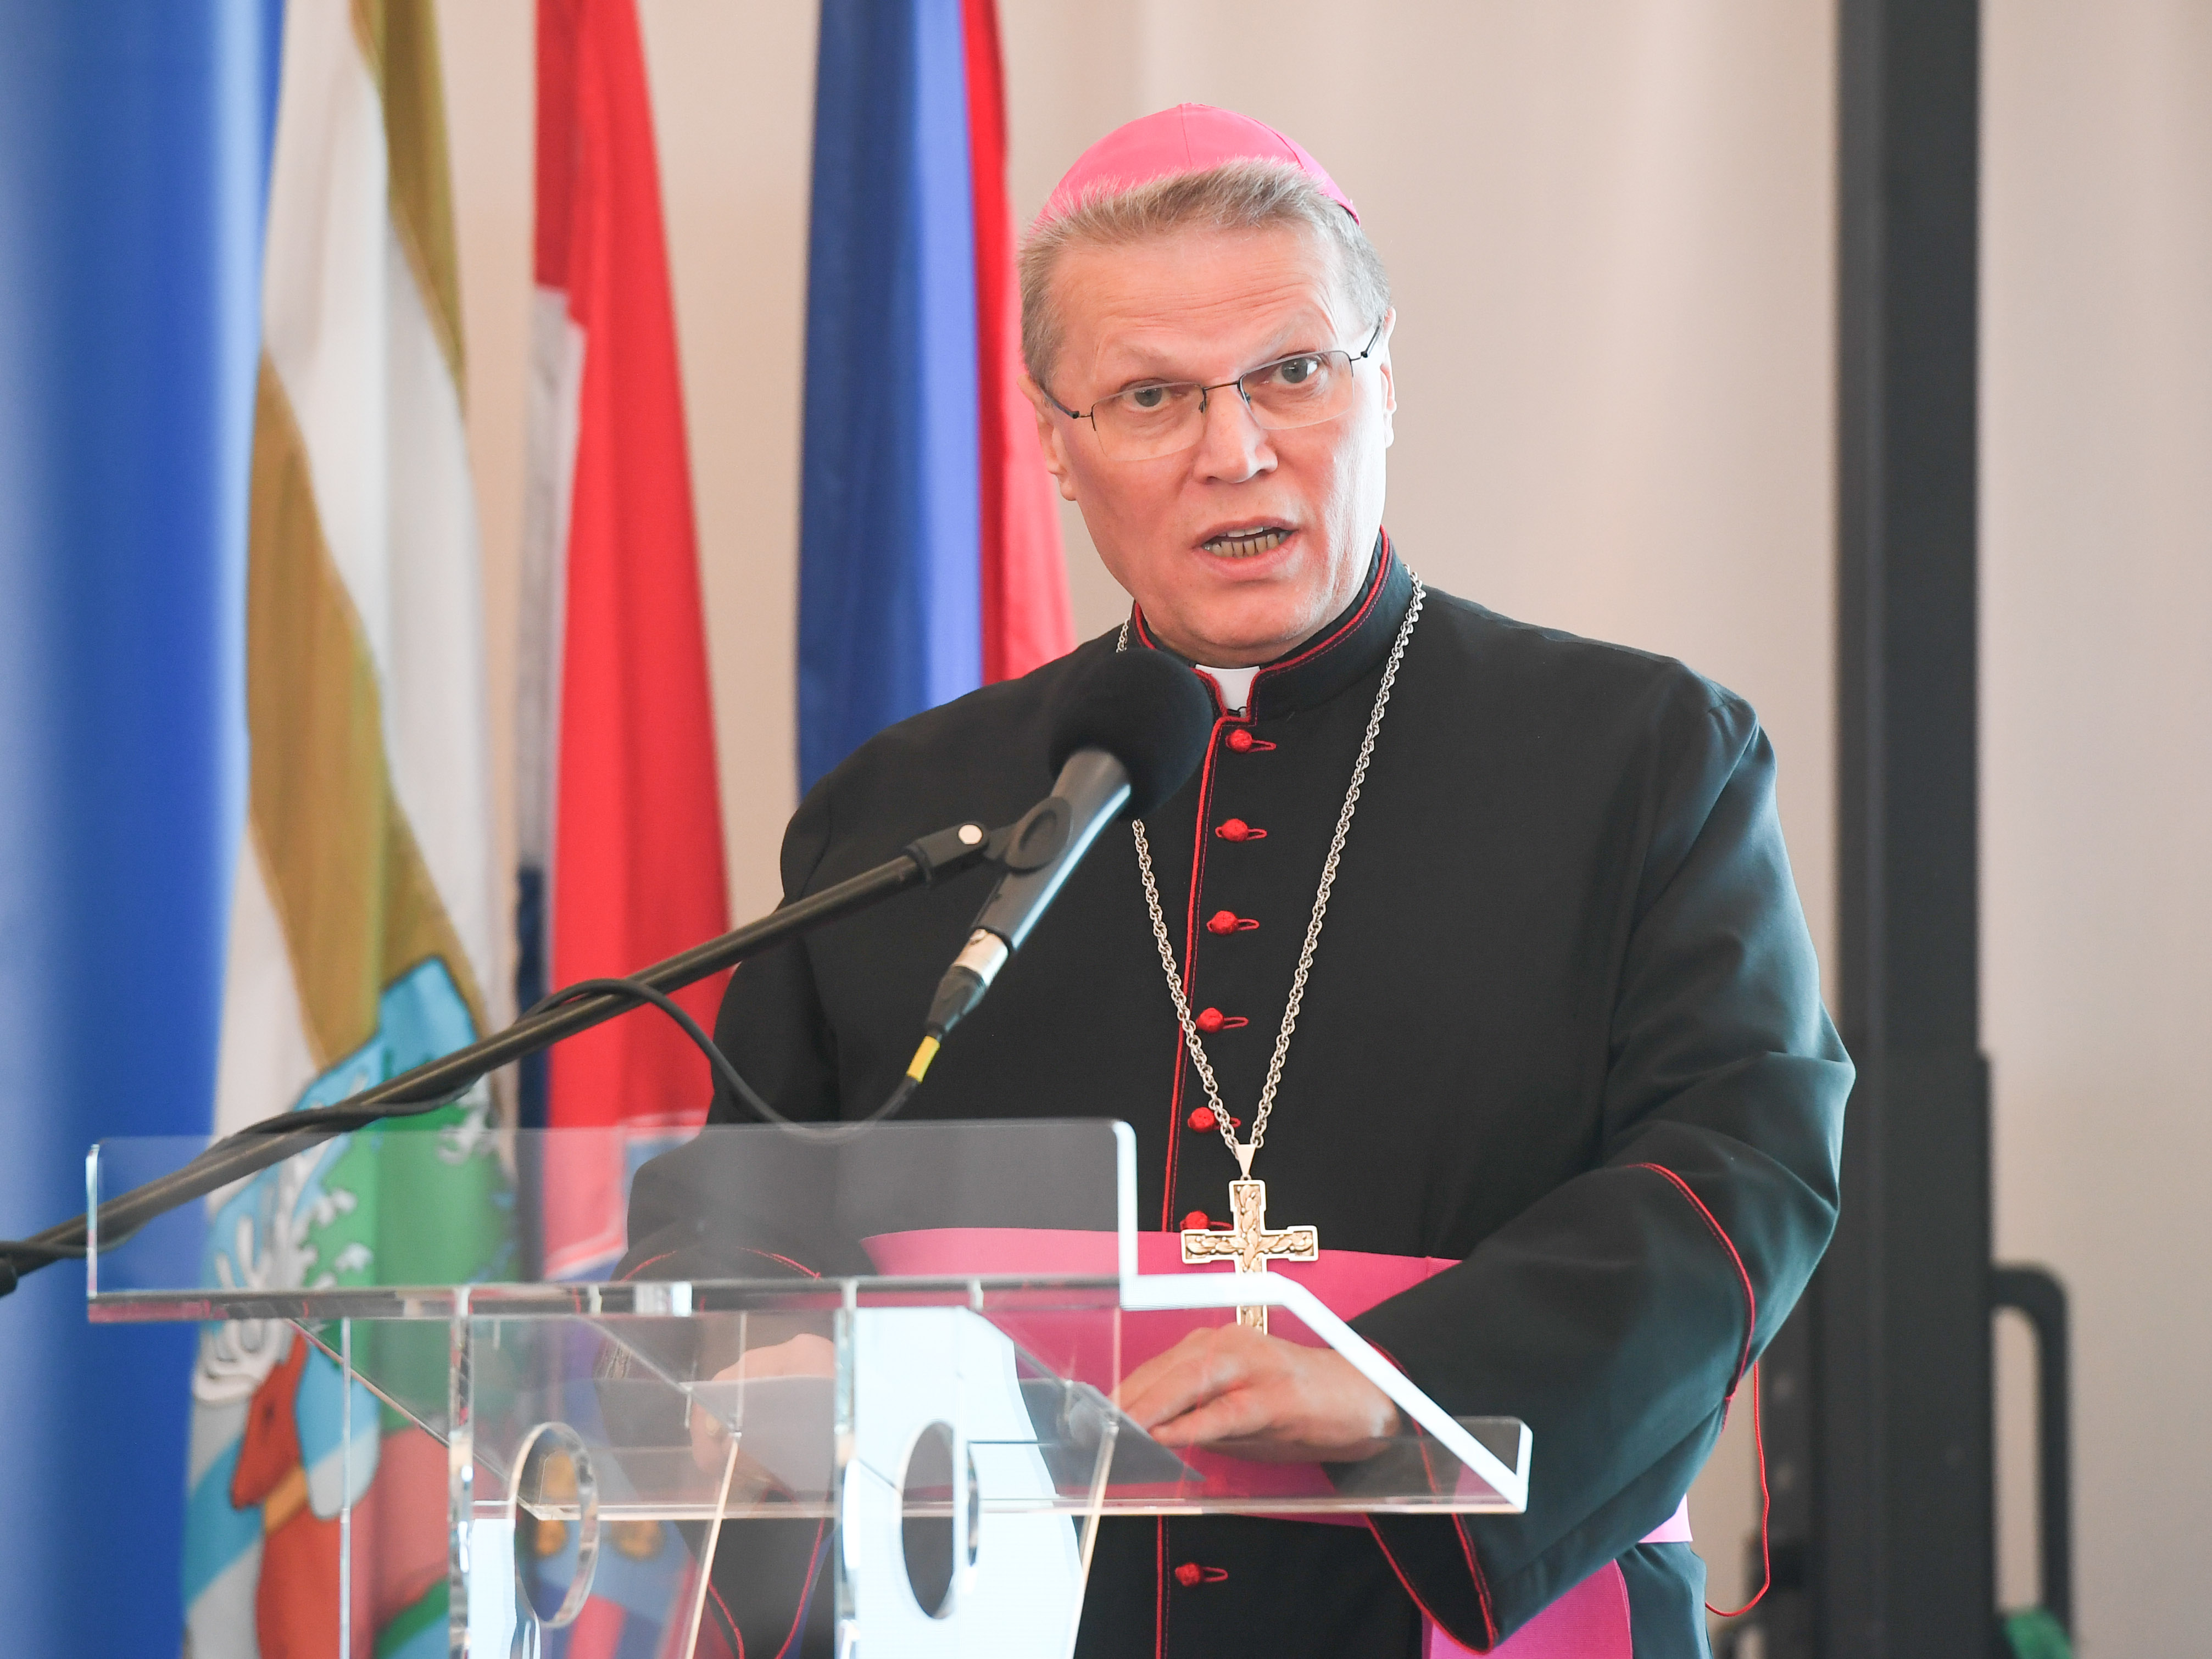 Ministar Banožić u Iloku: Intenzivni razvoj Slavonije i Baranje u fokusu je Vlade RH